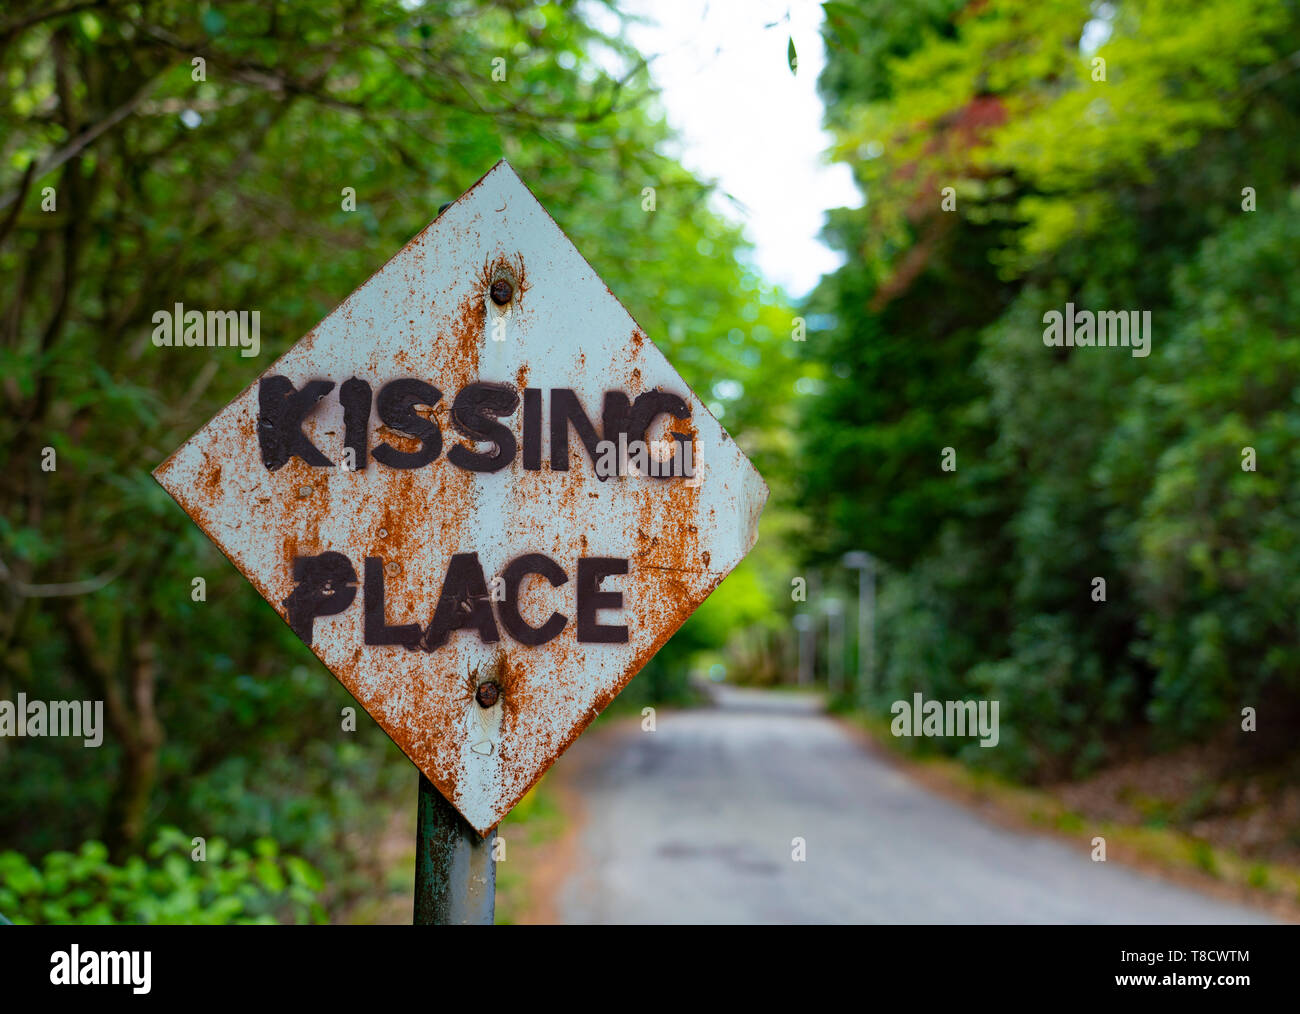 Signe en passant place modifié pour s'embrasser à la place de Glen Coe , Écosse Banque D'Images